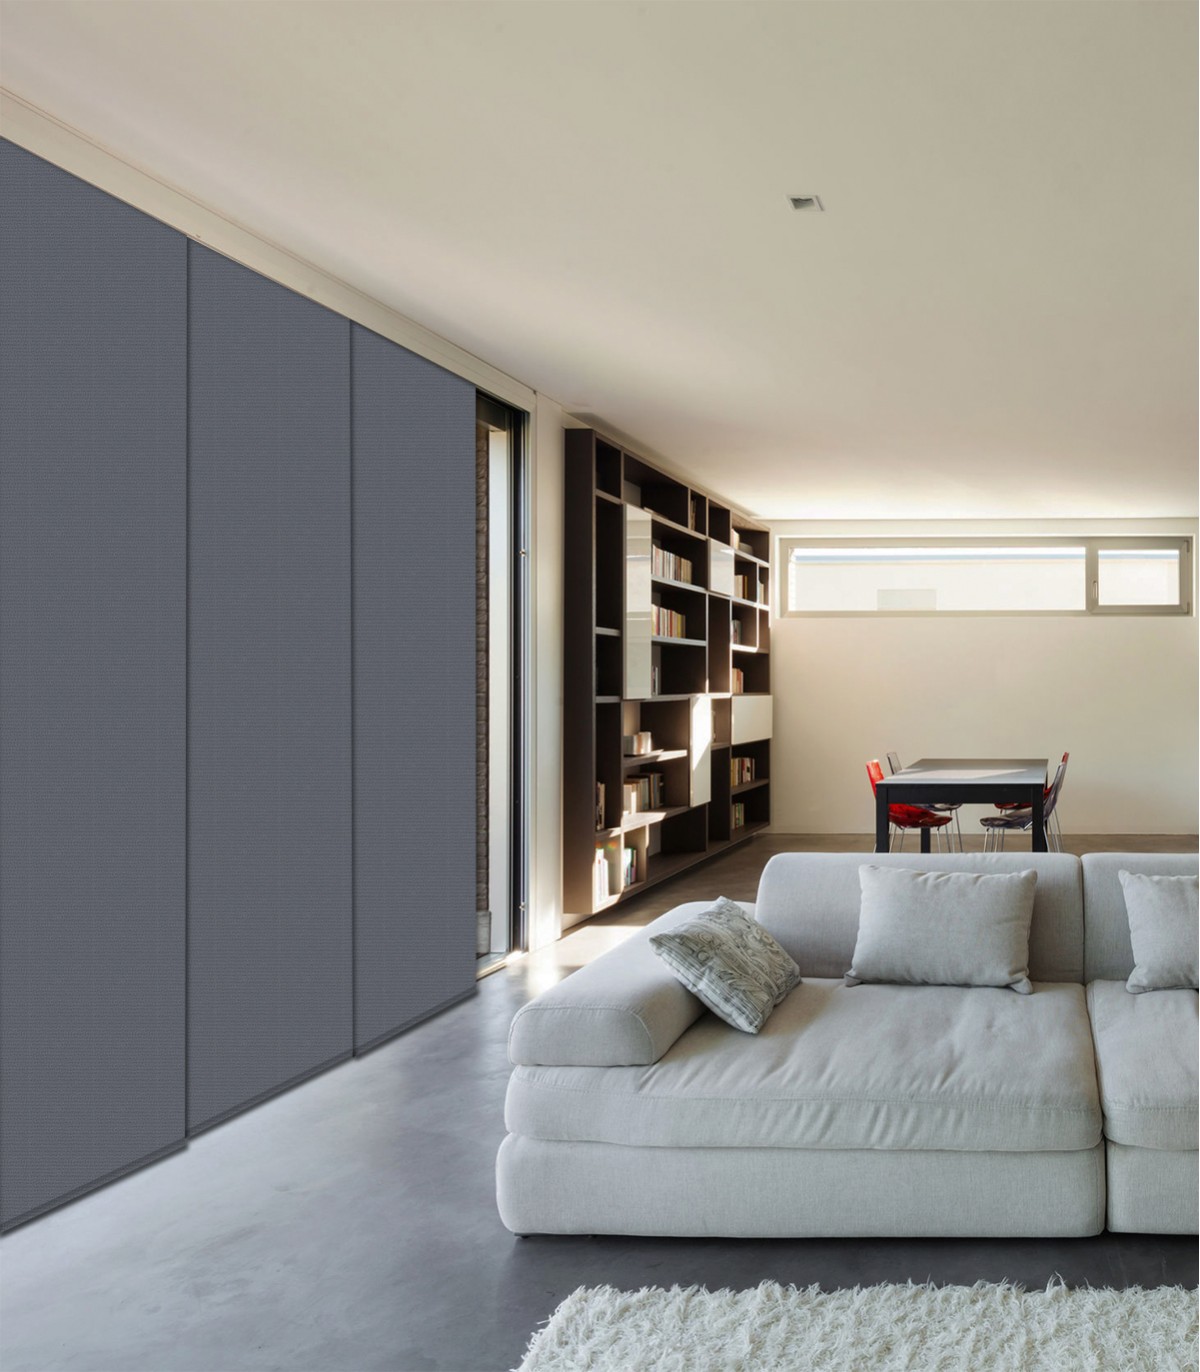 Panel japonés, la solución para cubrir grandes superficies en tu casa